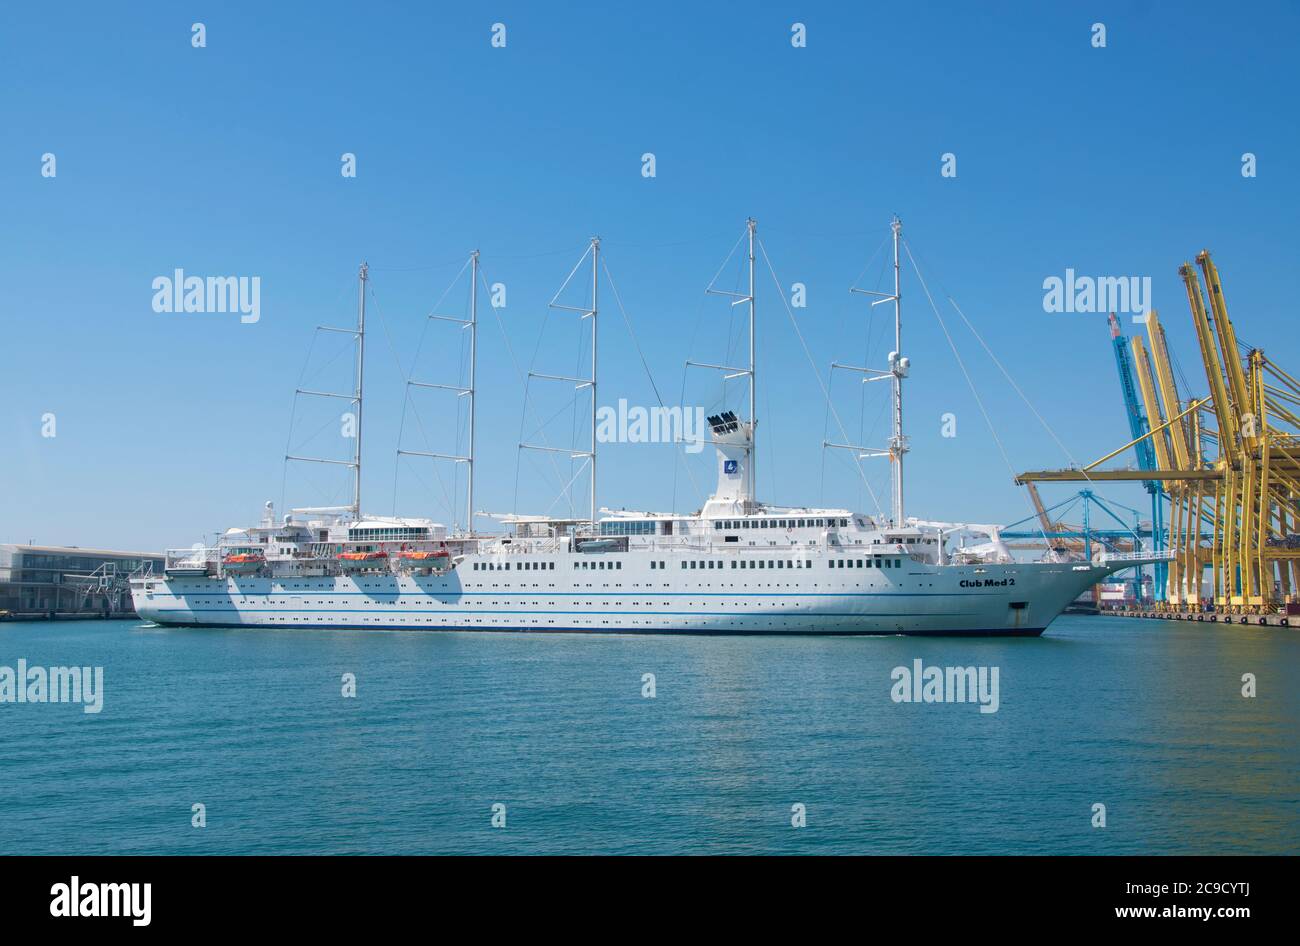 69/5000 Club Med 2 bateau de croisière manœuvrant au quai du port de Barcelone. Banque D'Images